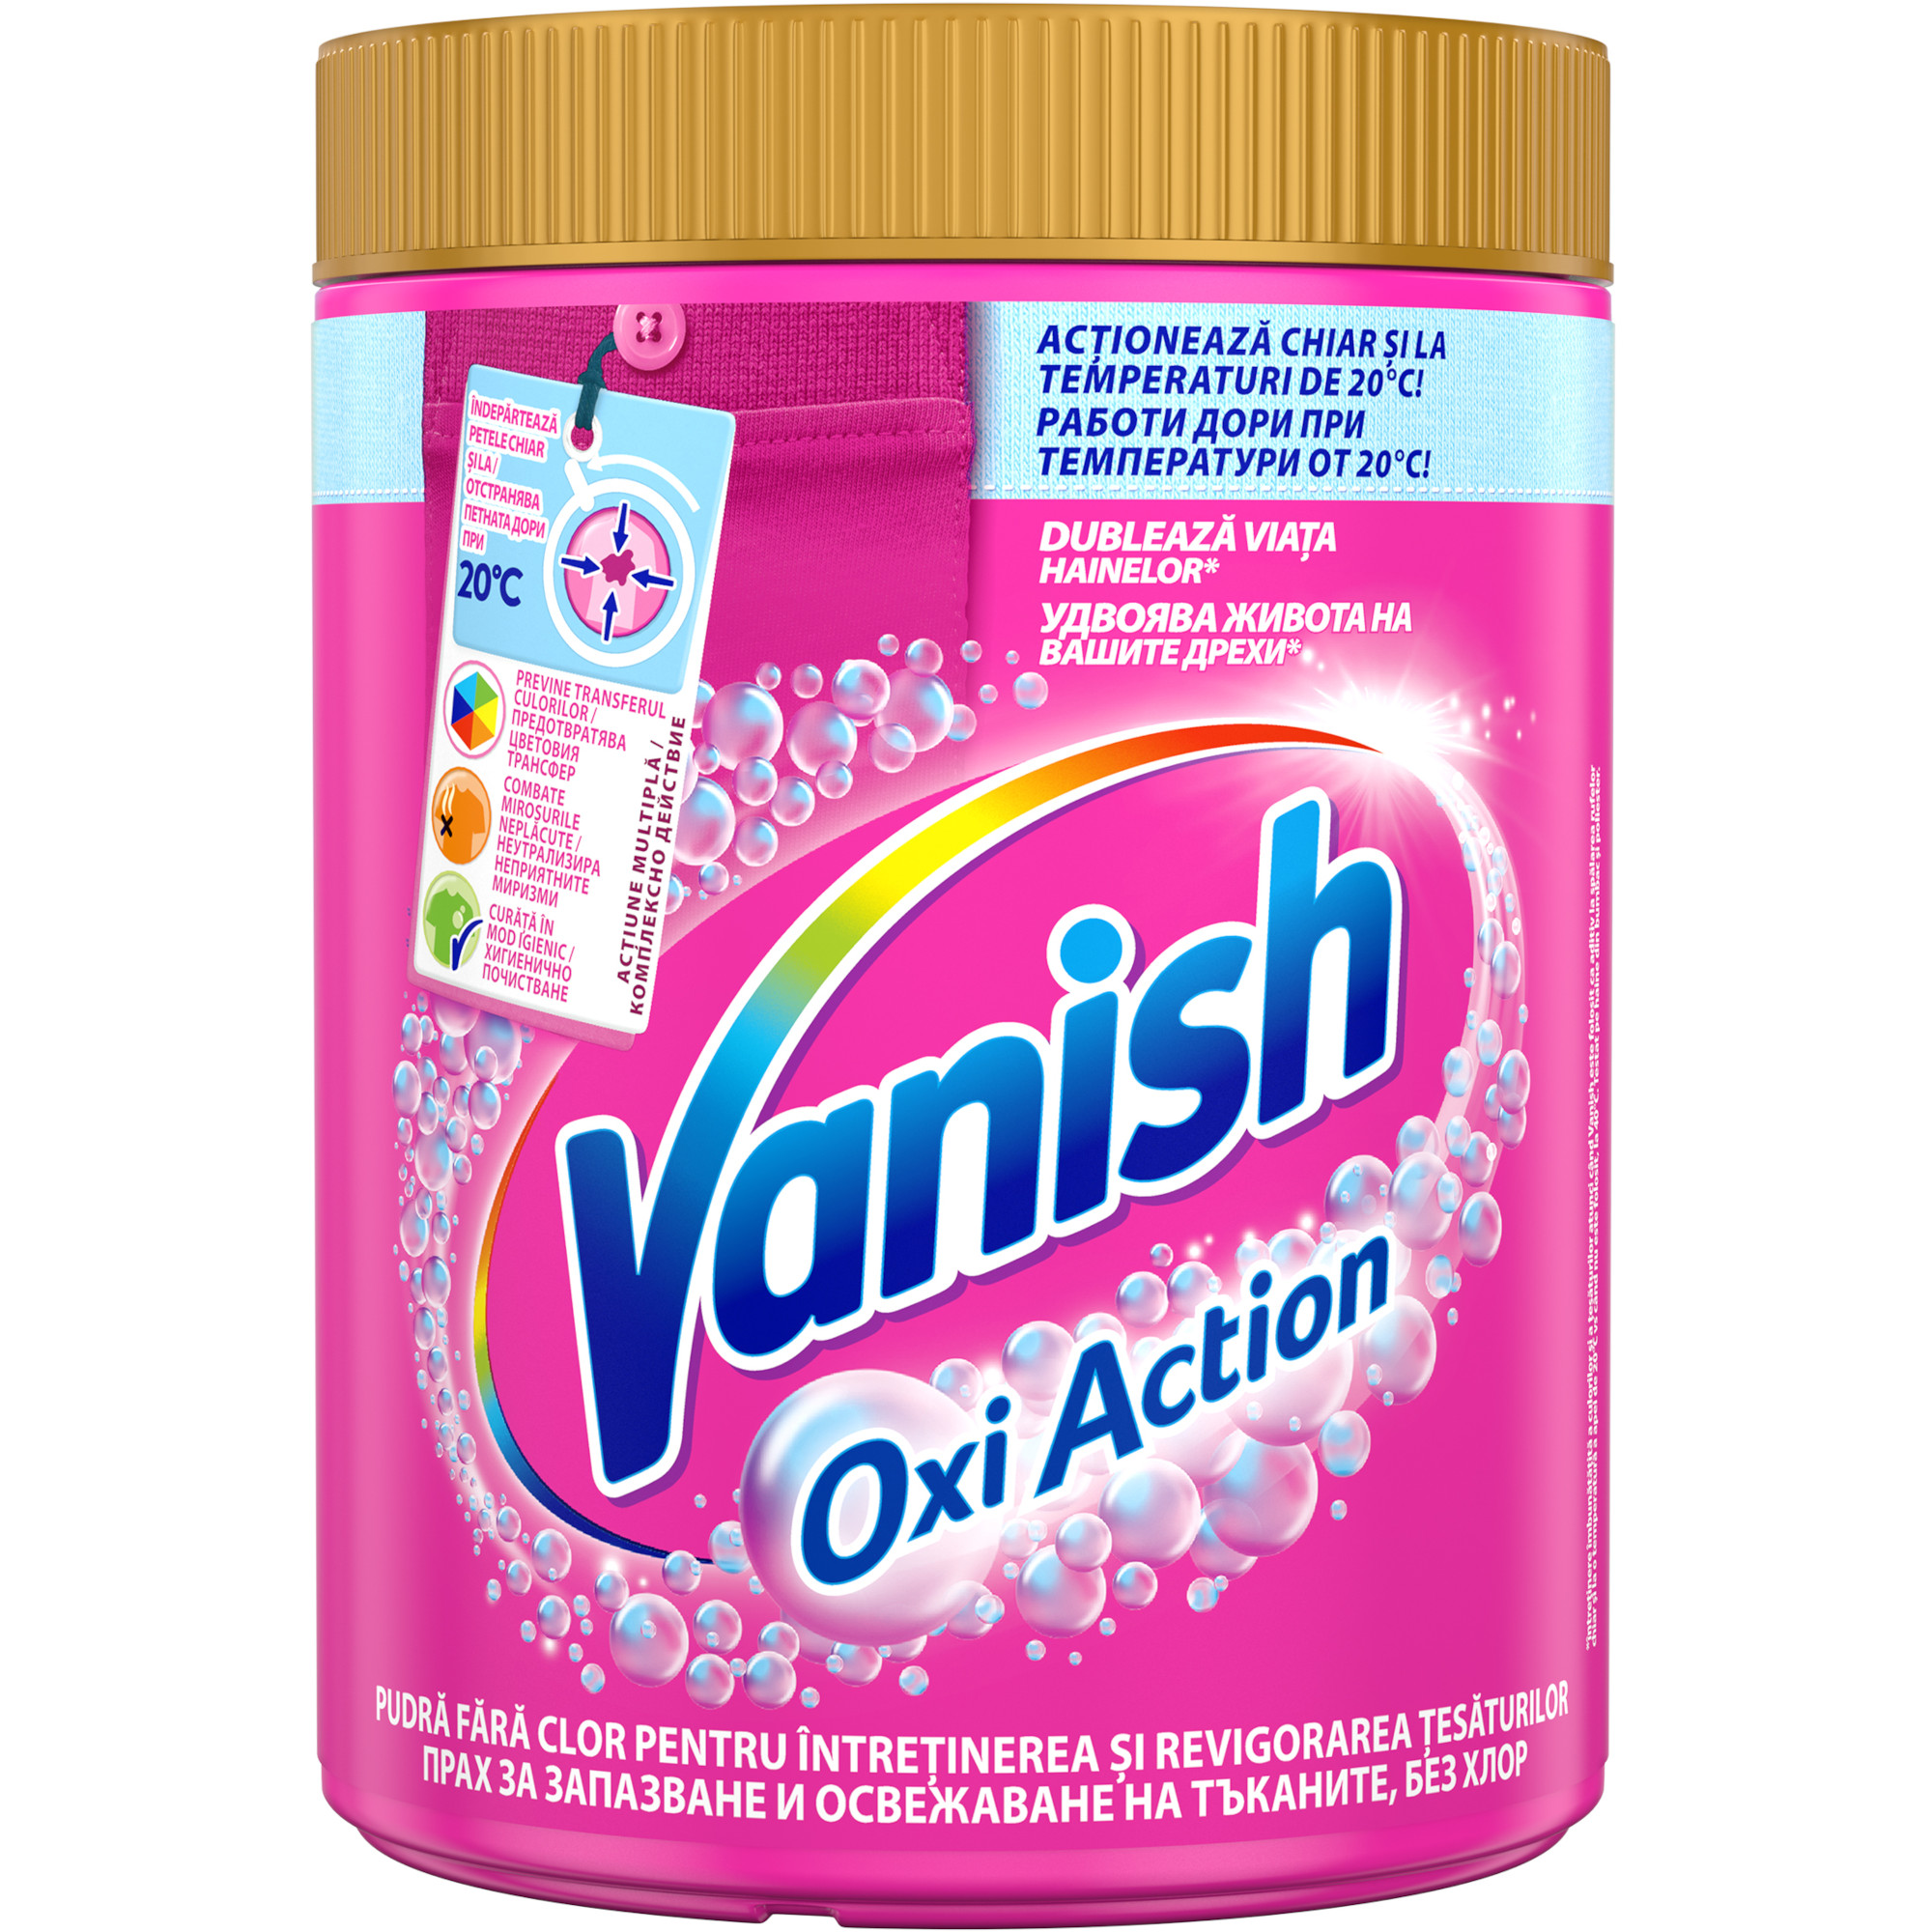 Solutie pudra pentru indepartarea petelor Vanish Oxi Action, 423 g